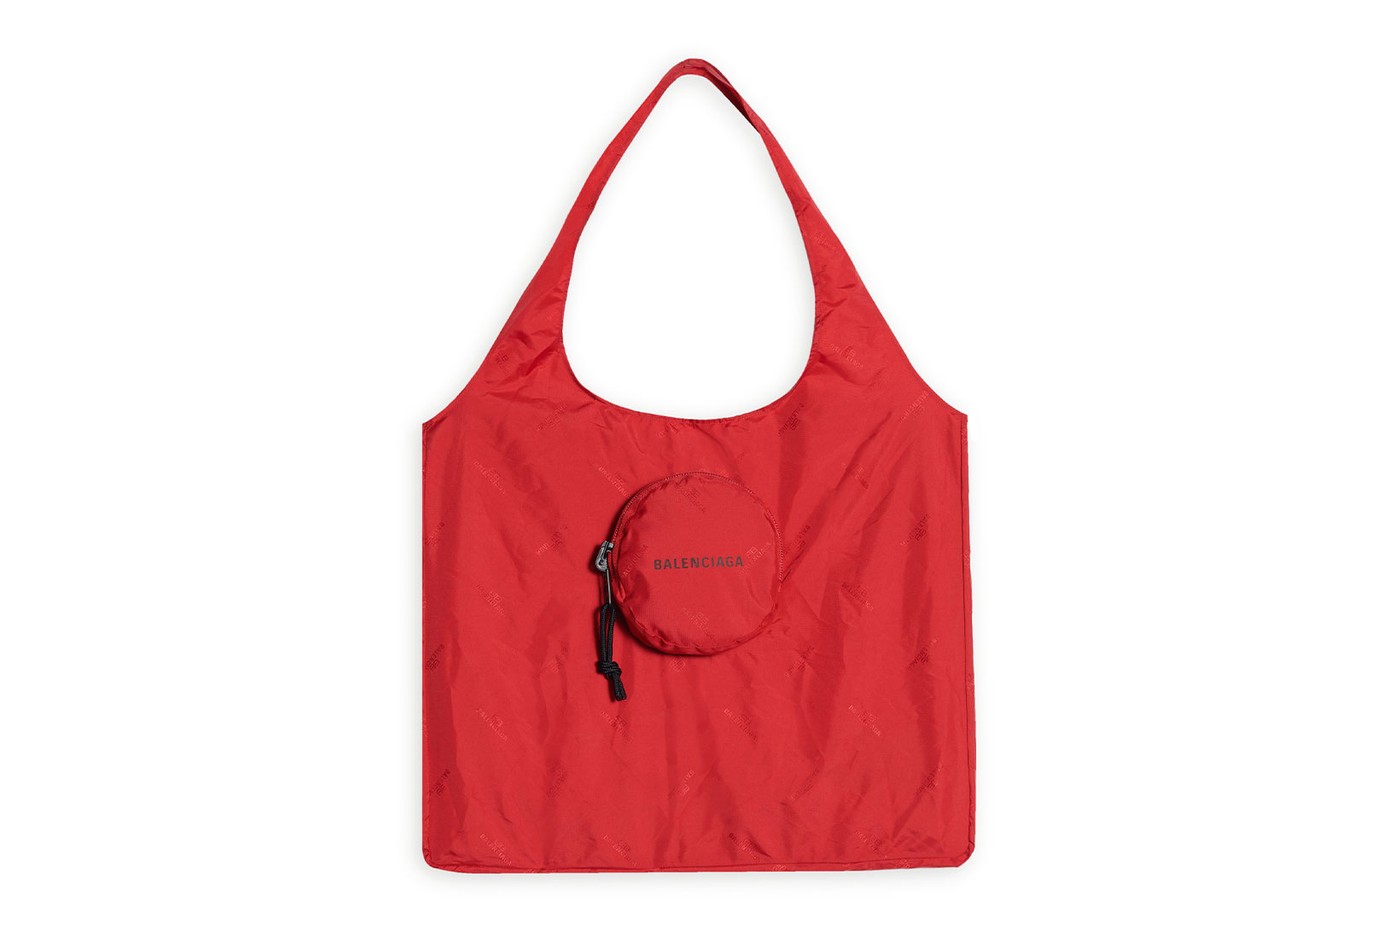 balenciaga grocery shopper bags logo reusable collapsible release